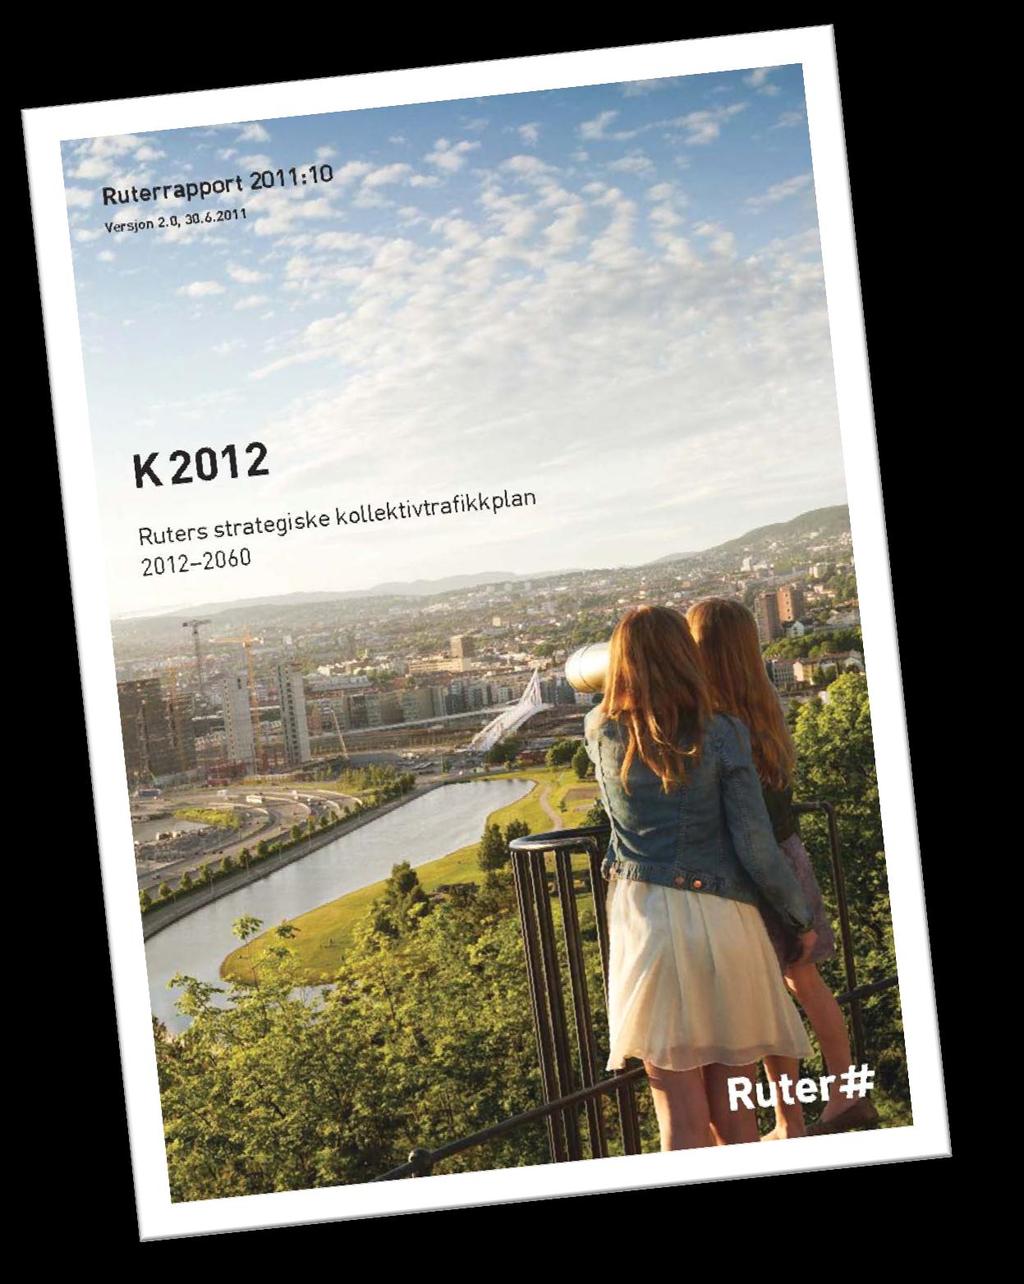 K2012 = Ruters strategiske kollektivtrafikkplan 2012-2060 Samlet strategidokument. Premissdokument for utviklingen av kollektivtrafikktilbudet.